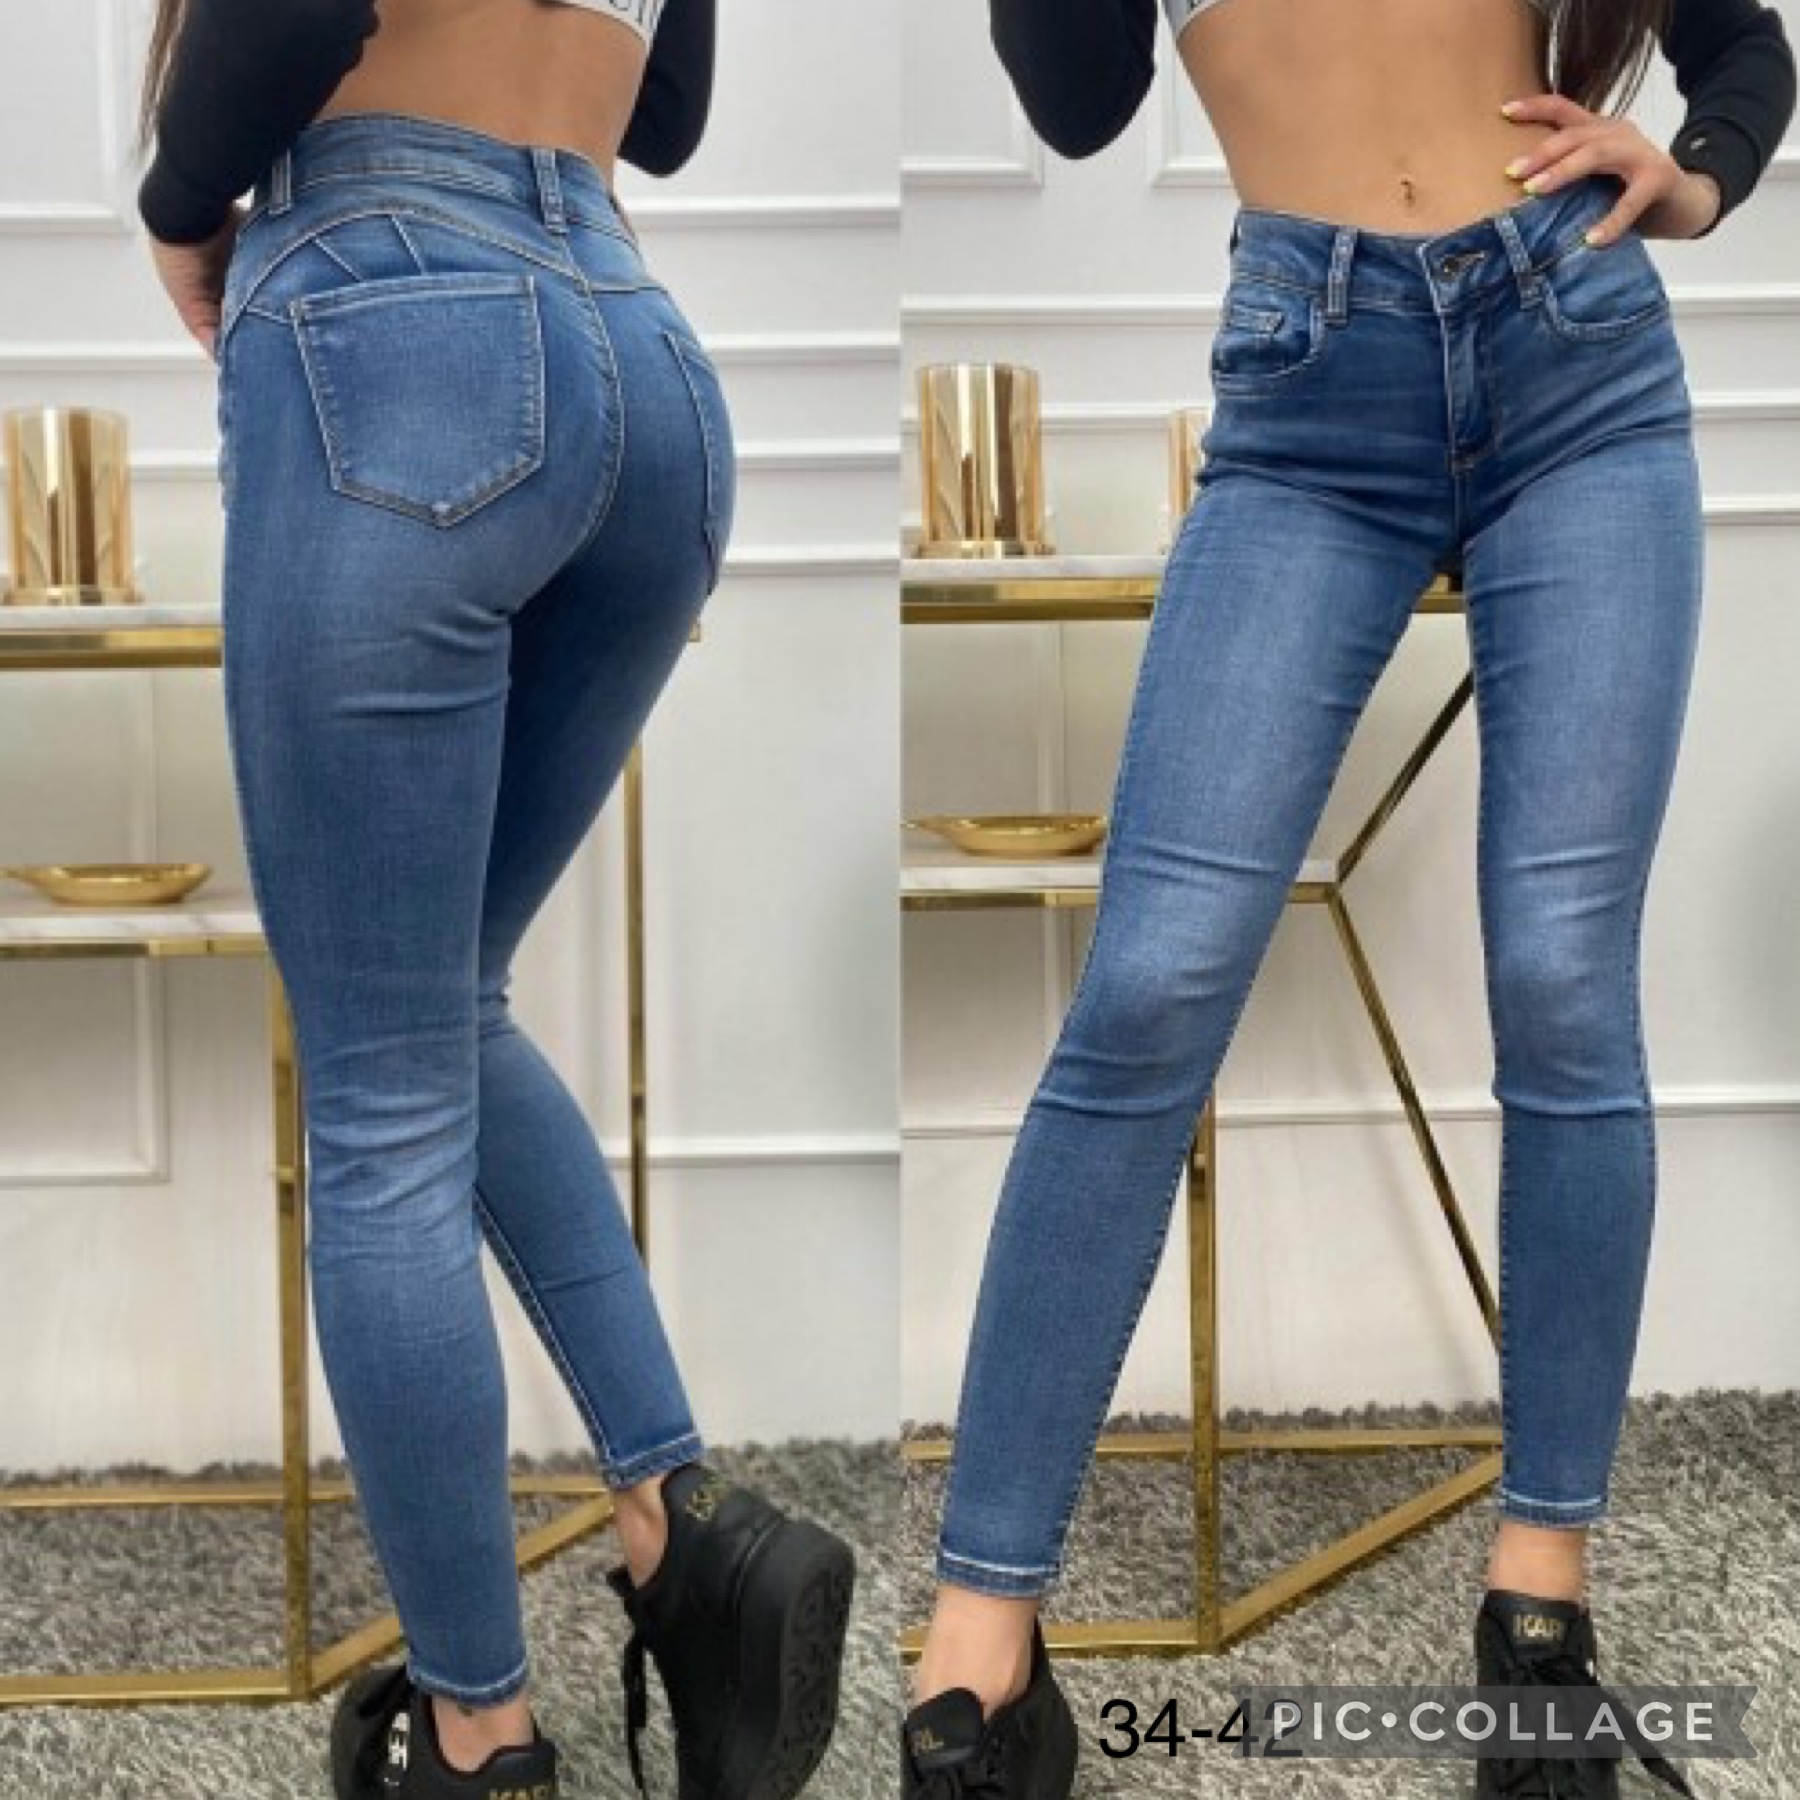 Spodnie damskie jeans Roz 34-42.  Paczka 10szt